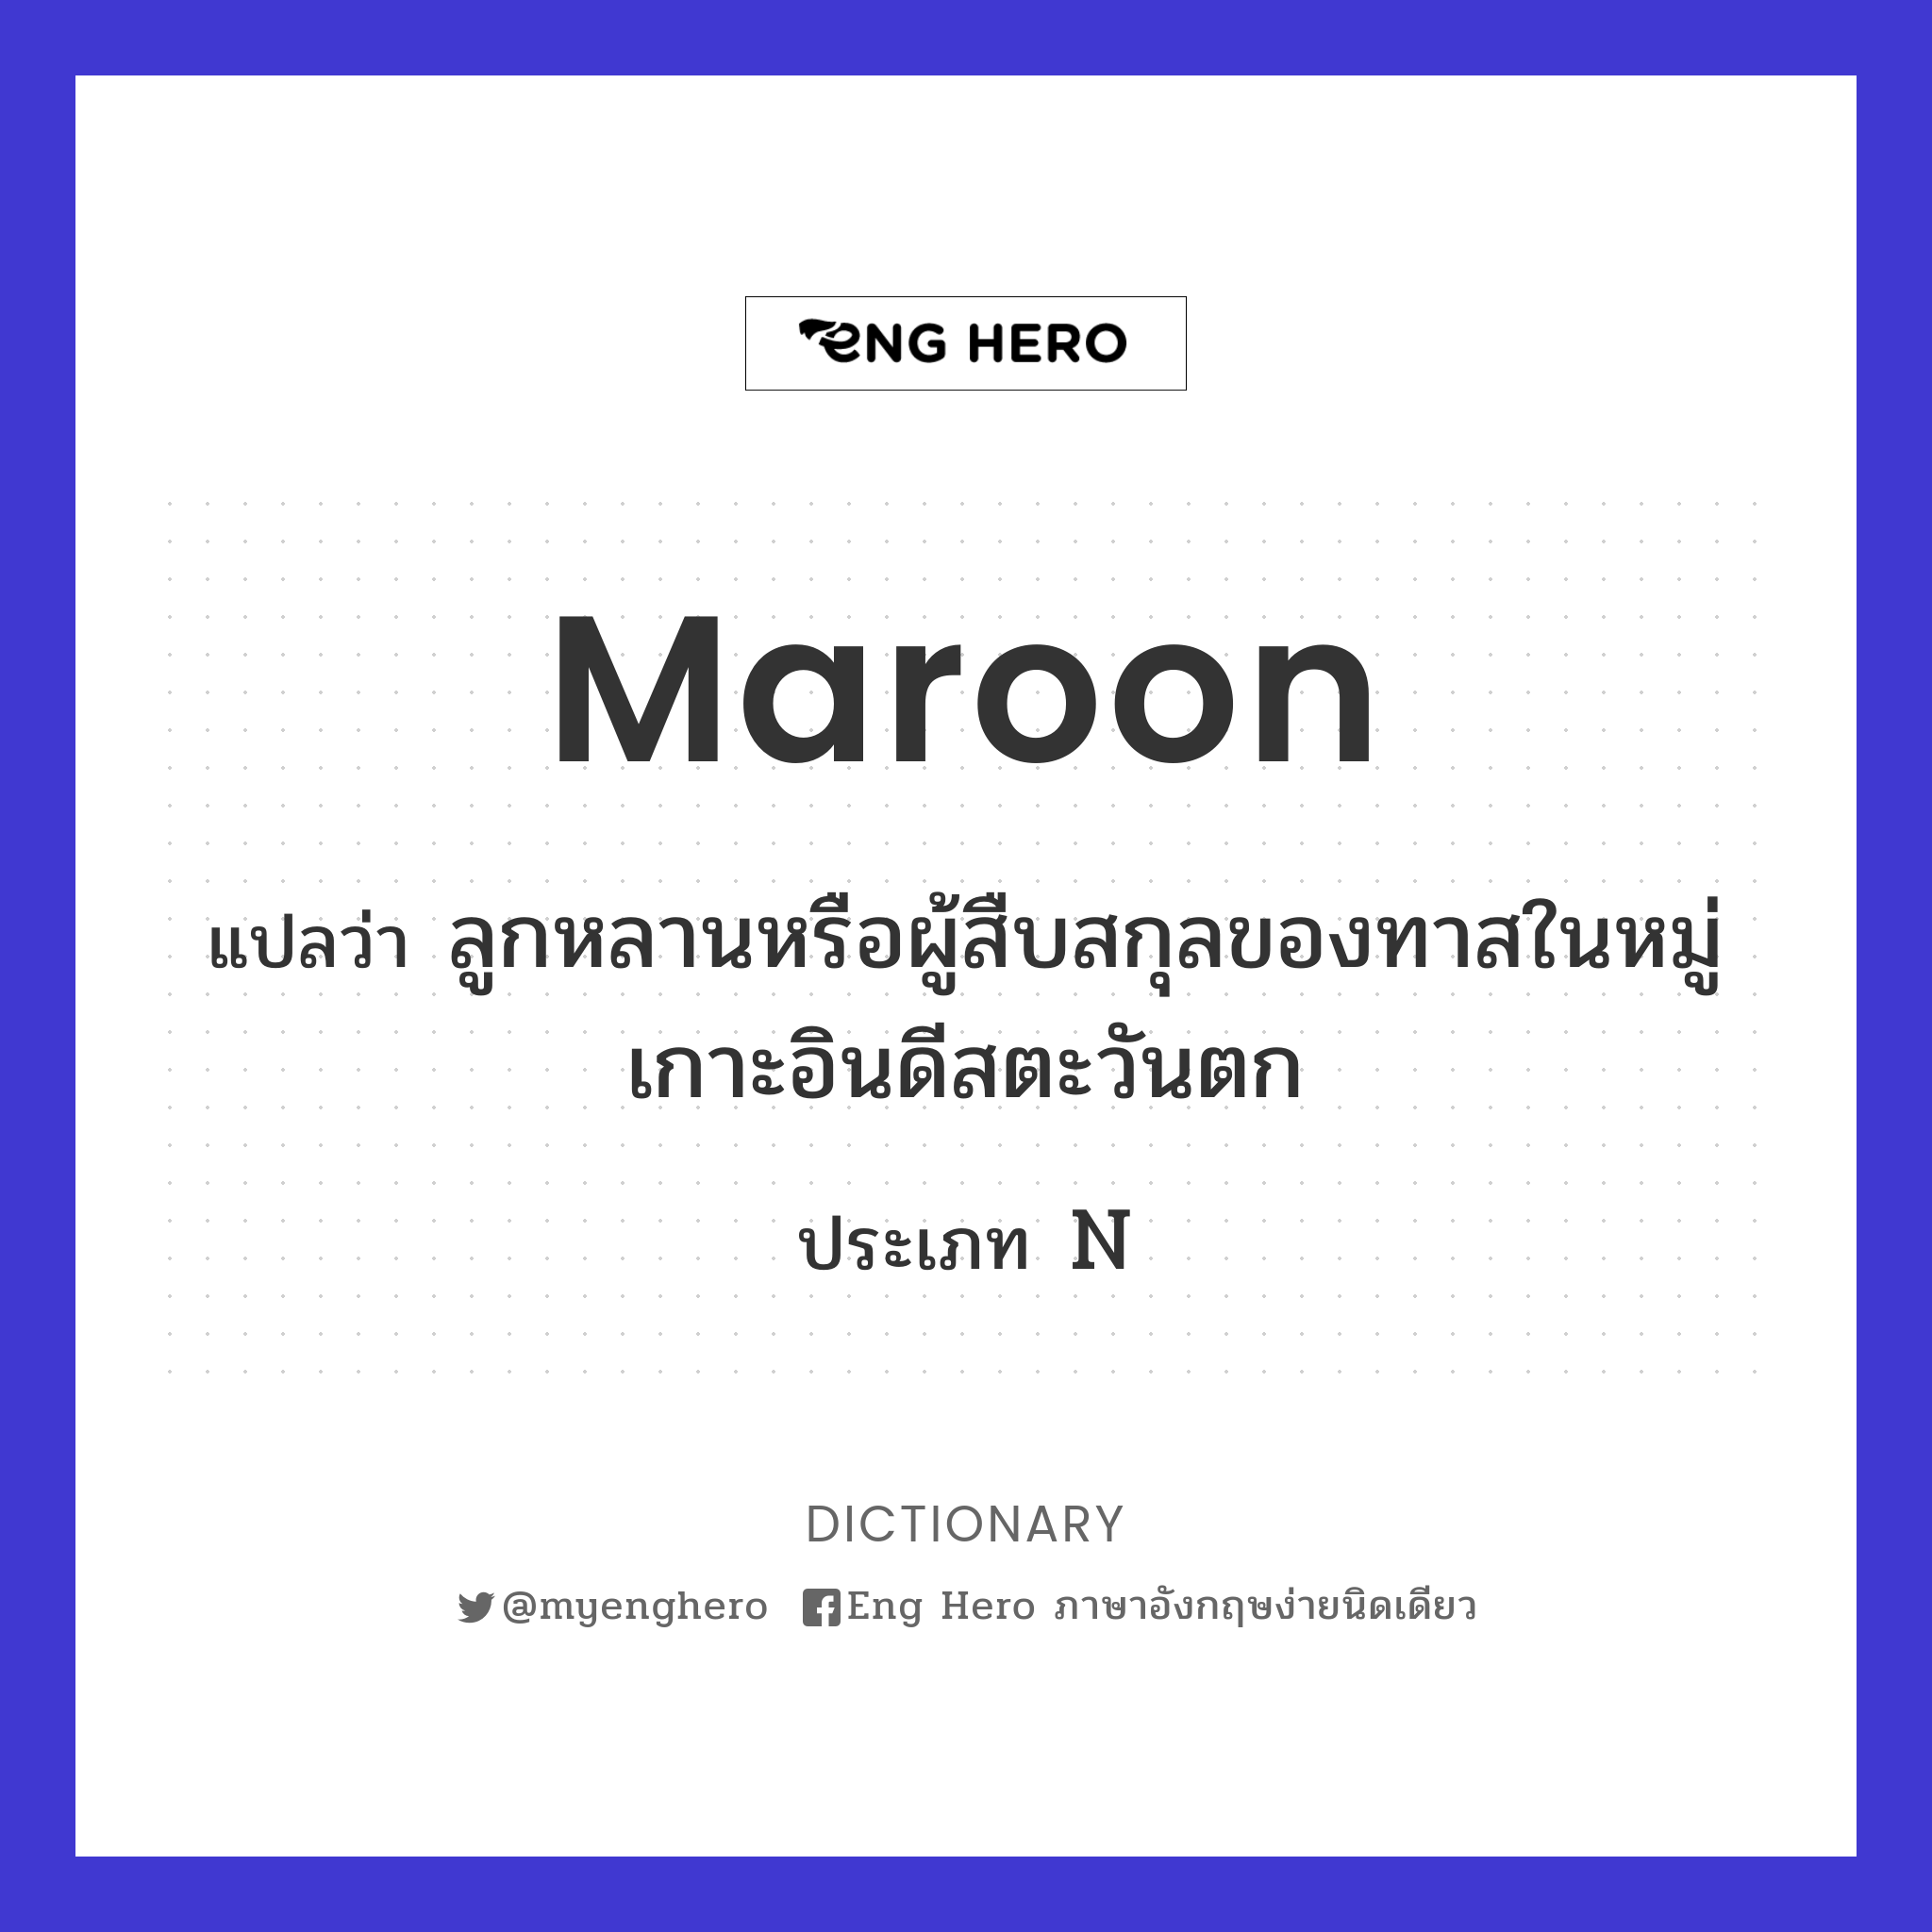 maroon